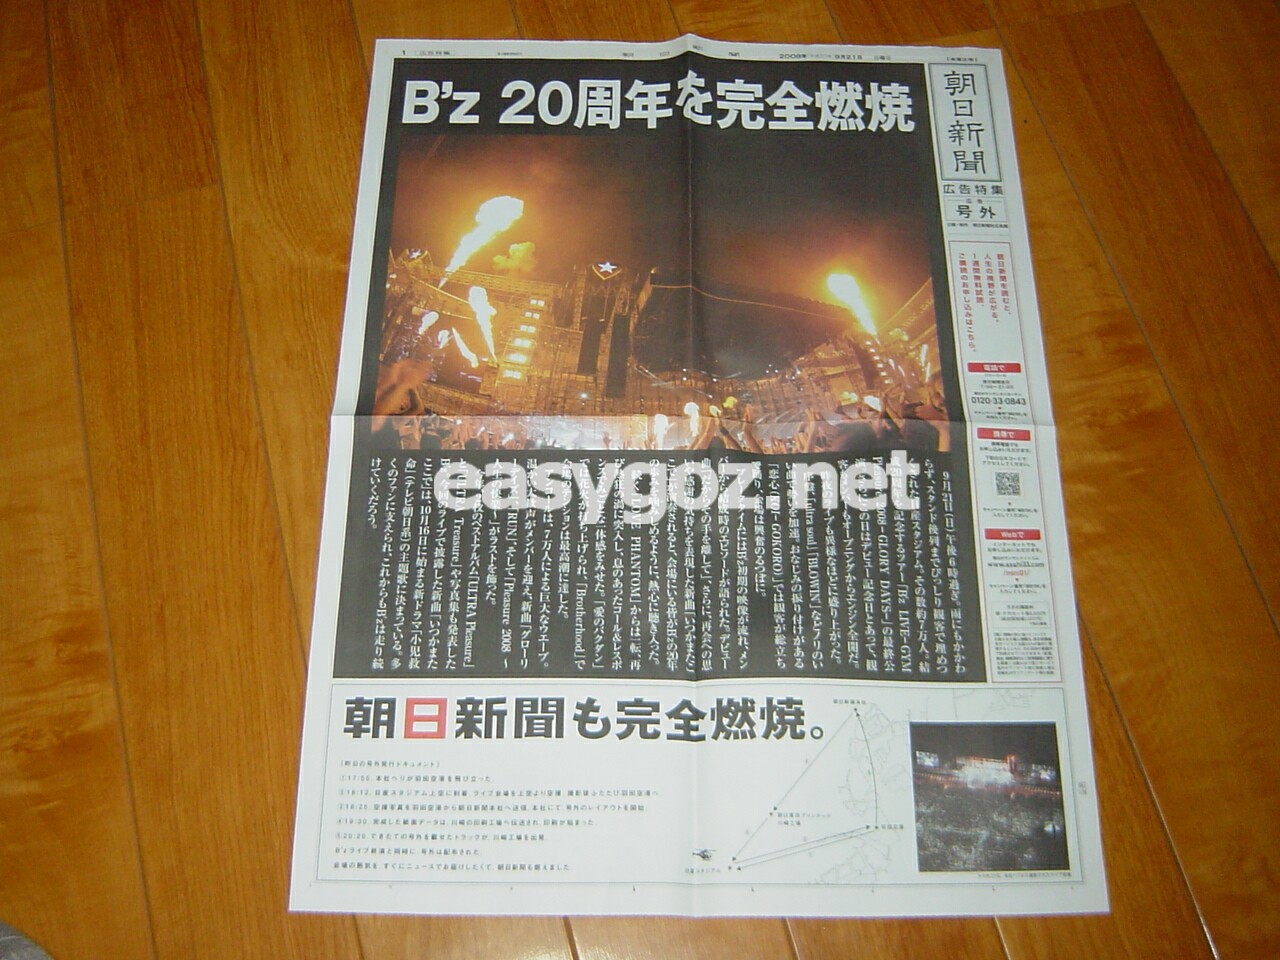 2008年 B'z 新聞・雑誌広告まとめ | easygo! -B'z DATA BOX-